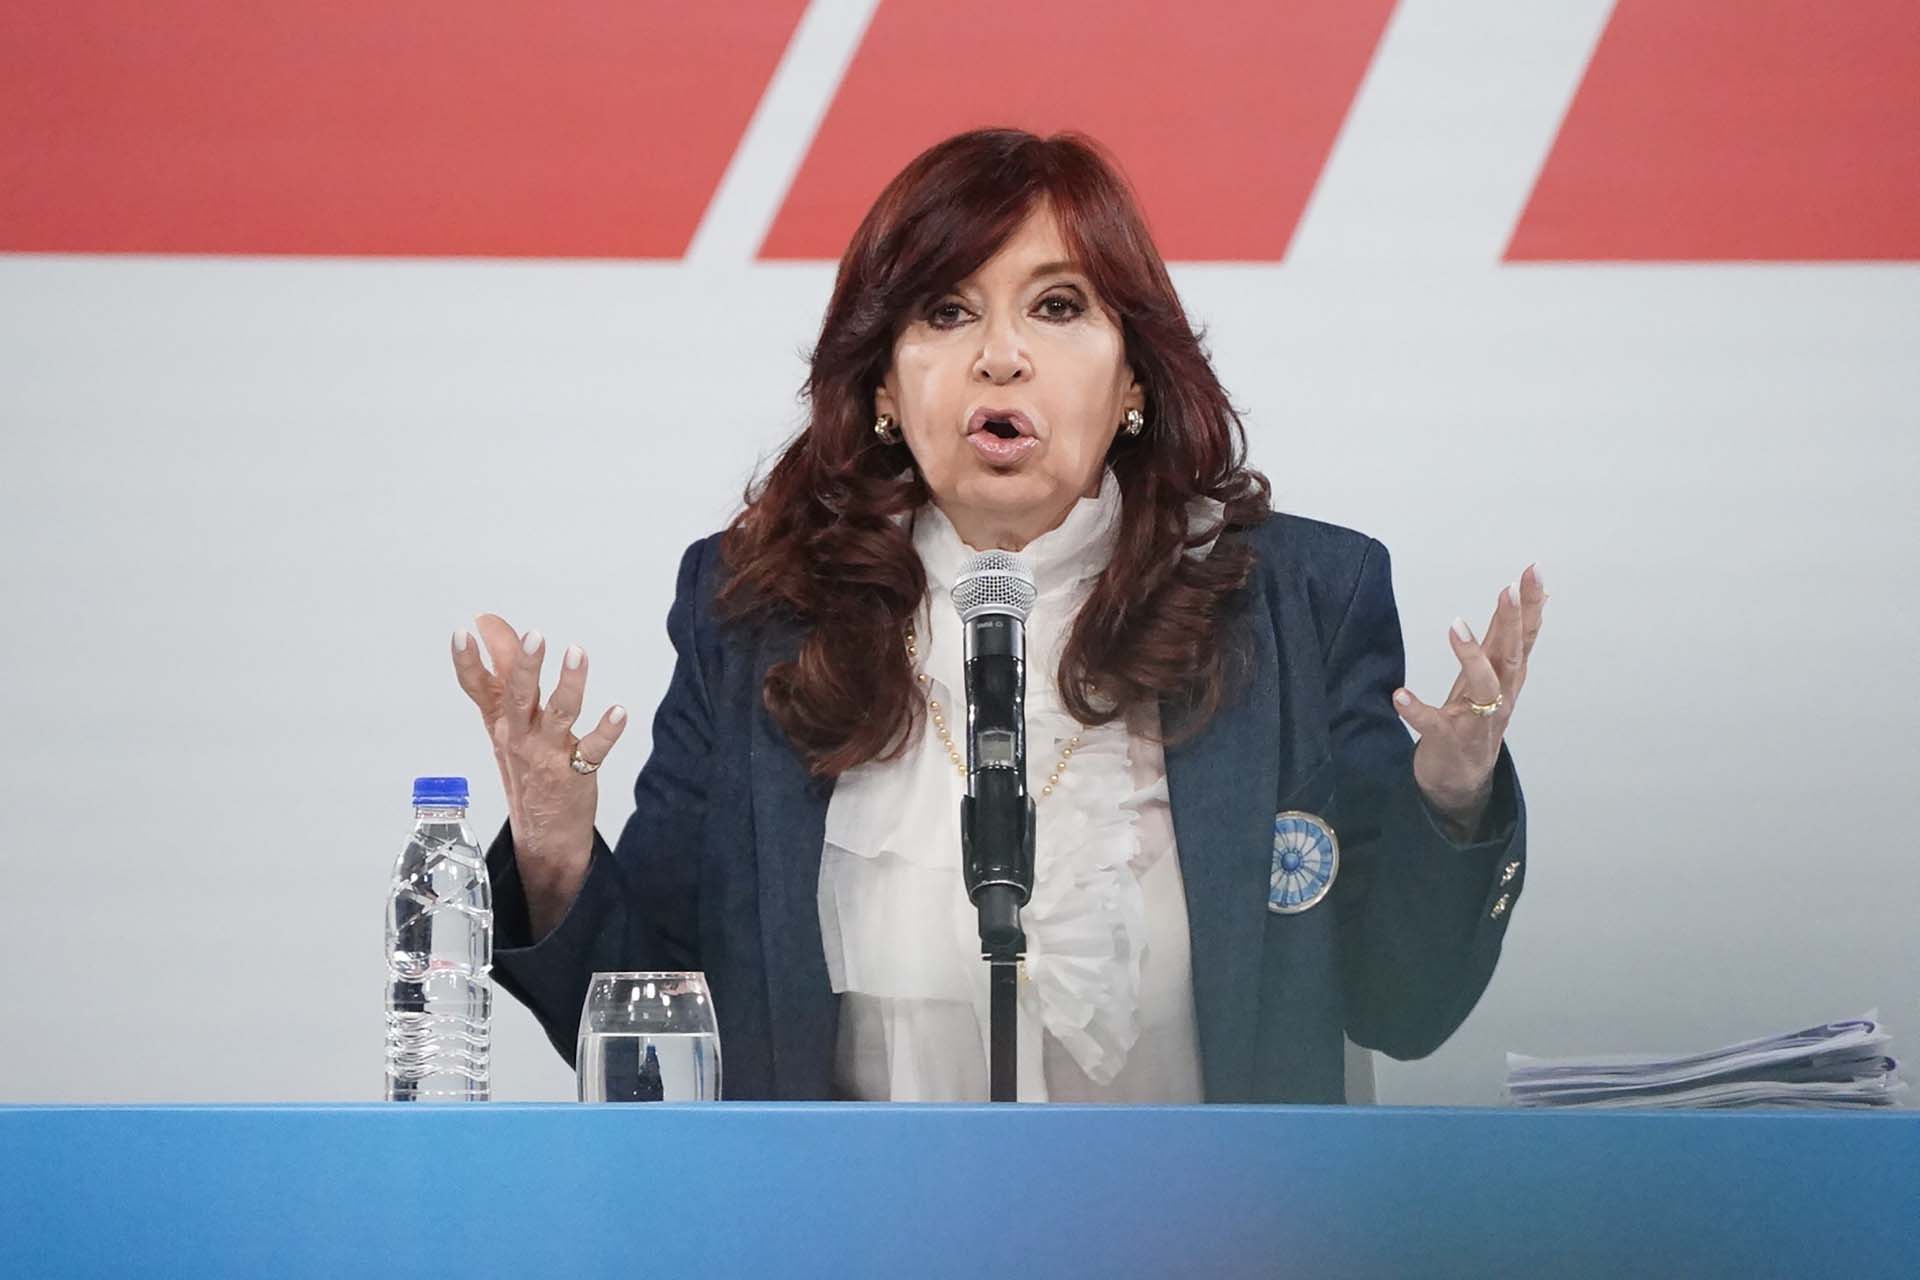 La Vicepresidenta apuntó contra funcionarios clave de Alberto Fernández (Franco Fafasuli)